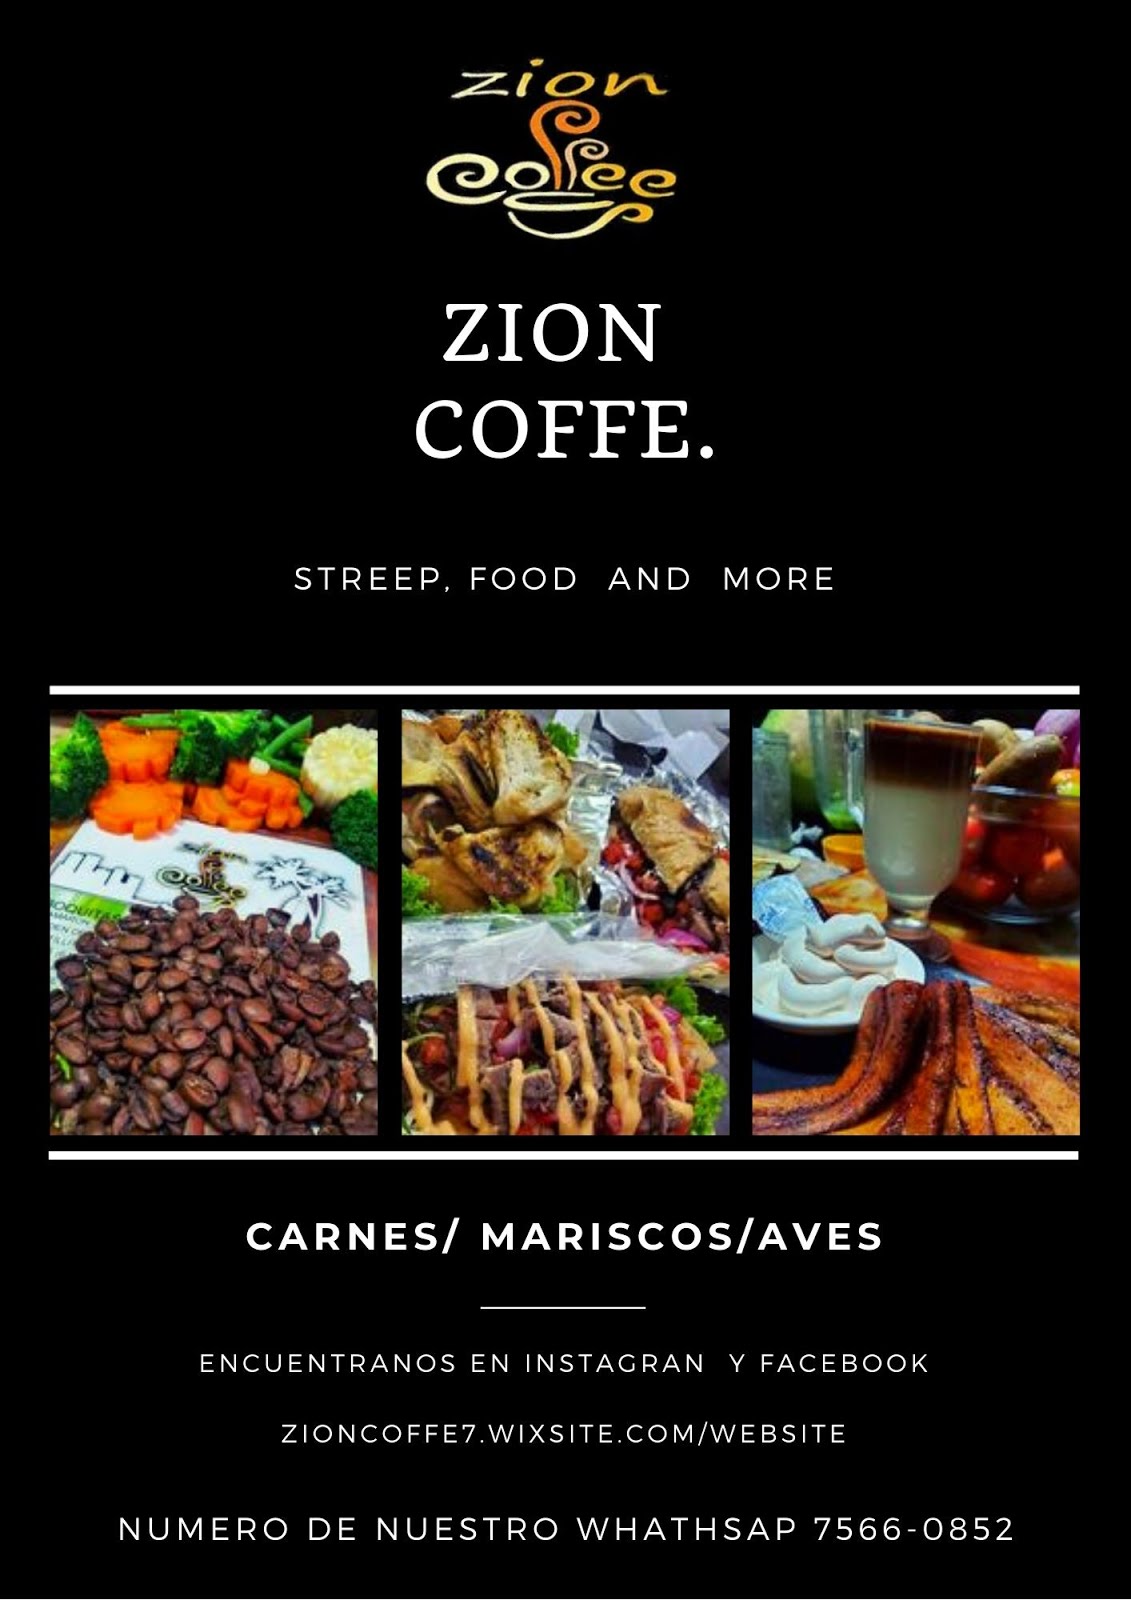 Zion coffe